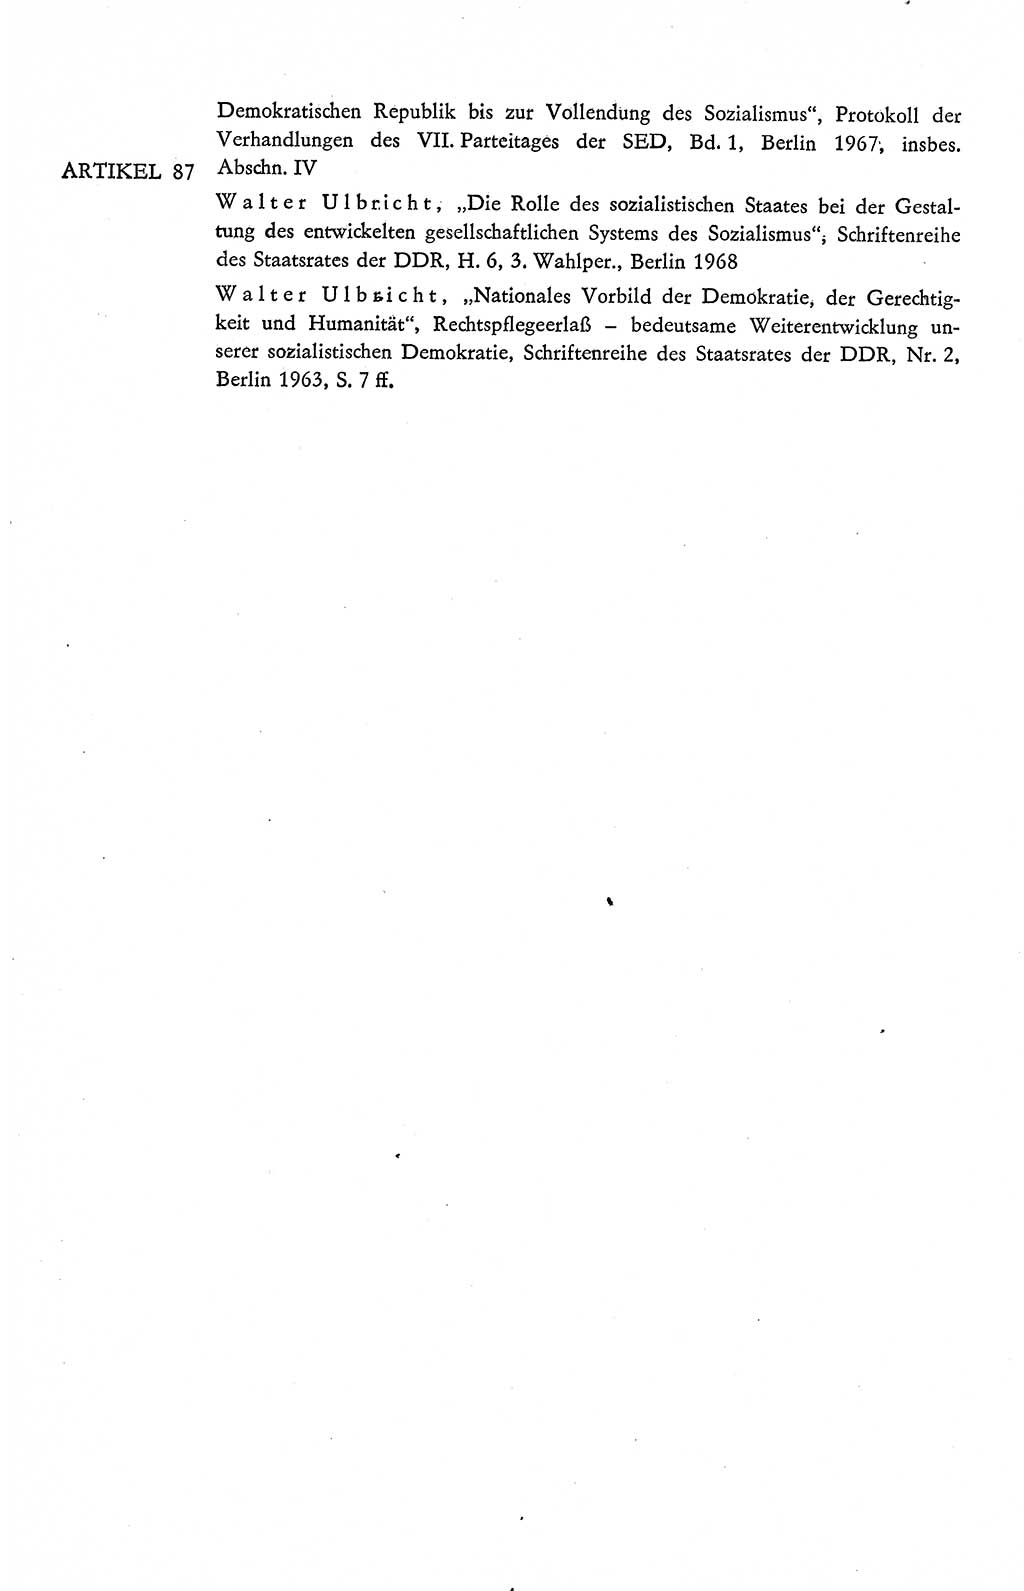 Verfassung der Deutschen Demokratischen Republik (DDR), Dokumente, Kommentar 1969, Band 2, Seite 414 (Verf. DDR Dok. Komm. 1969, Bd. 2, S. 414)